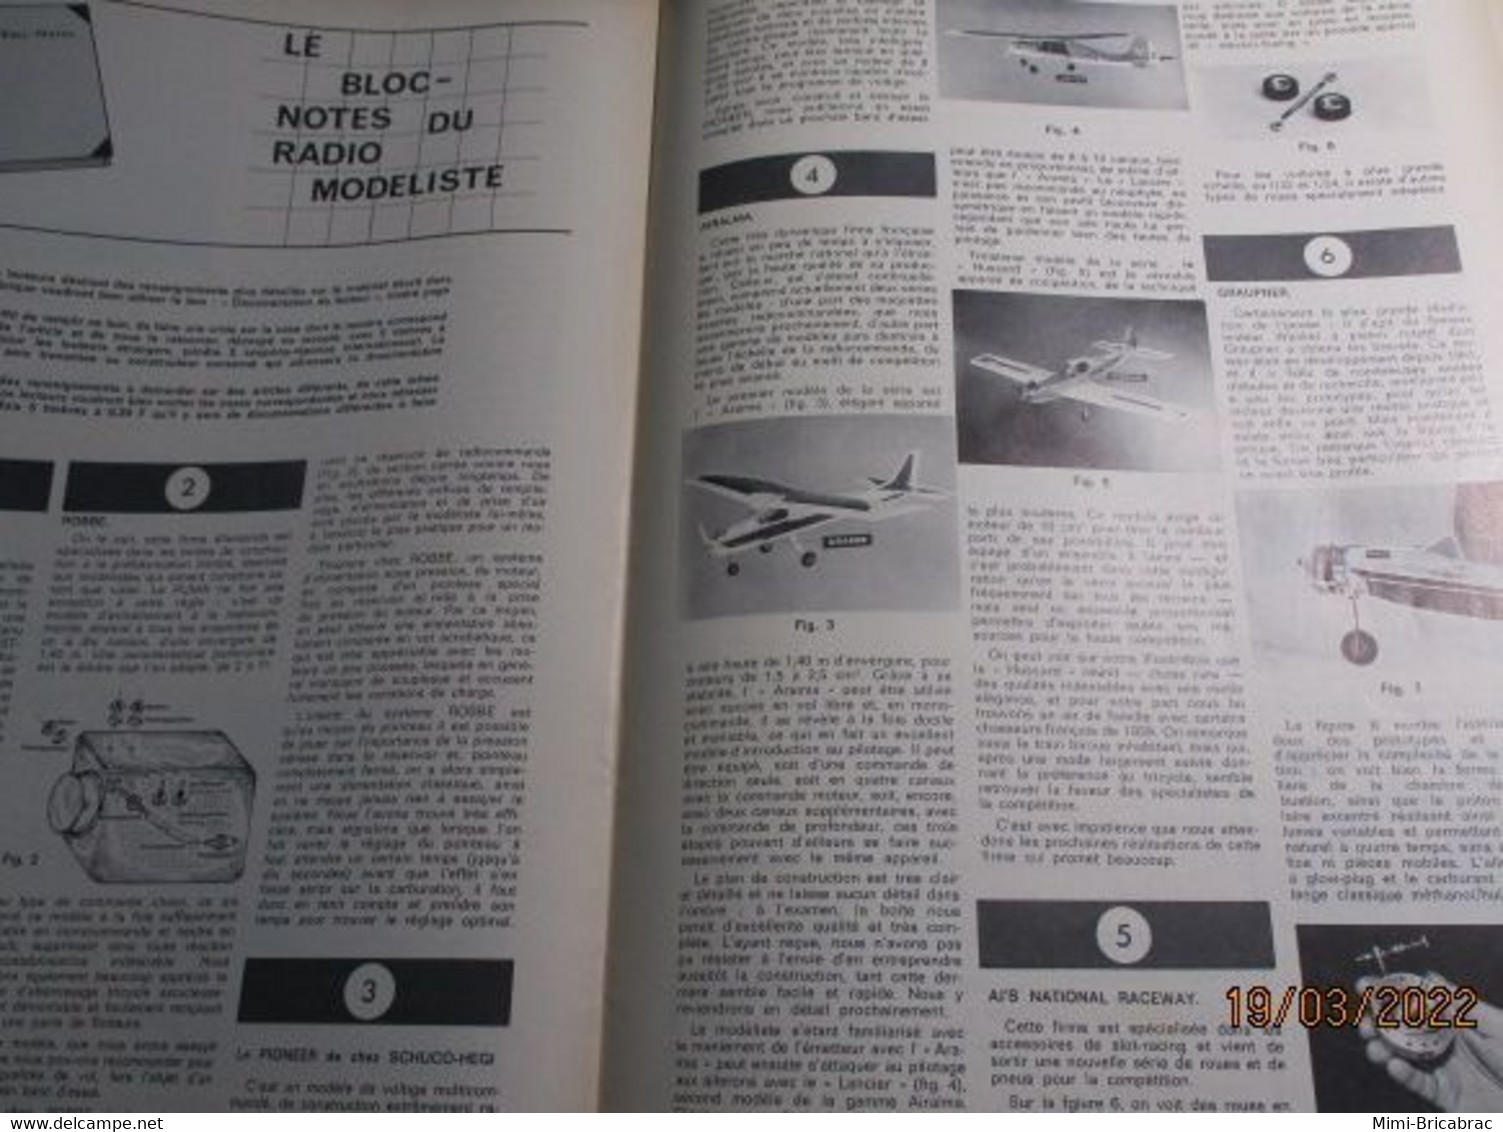 22-A REVUE RADIO-MODELISME  ELECTRONIQUE ANIMATION N°15 De MARS 1968 , TRES BON ETAT , COMPLET - R/C Modelle (ferngesteuert)